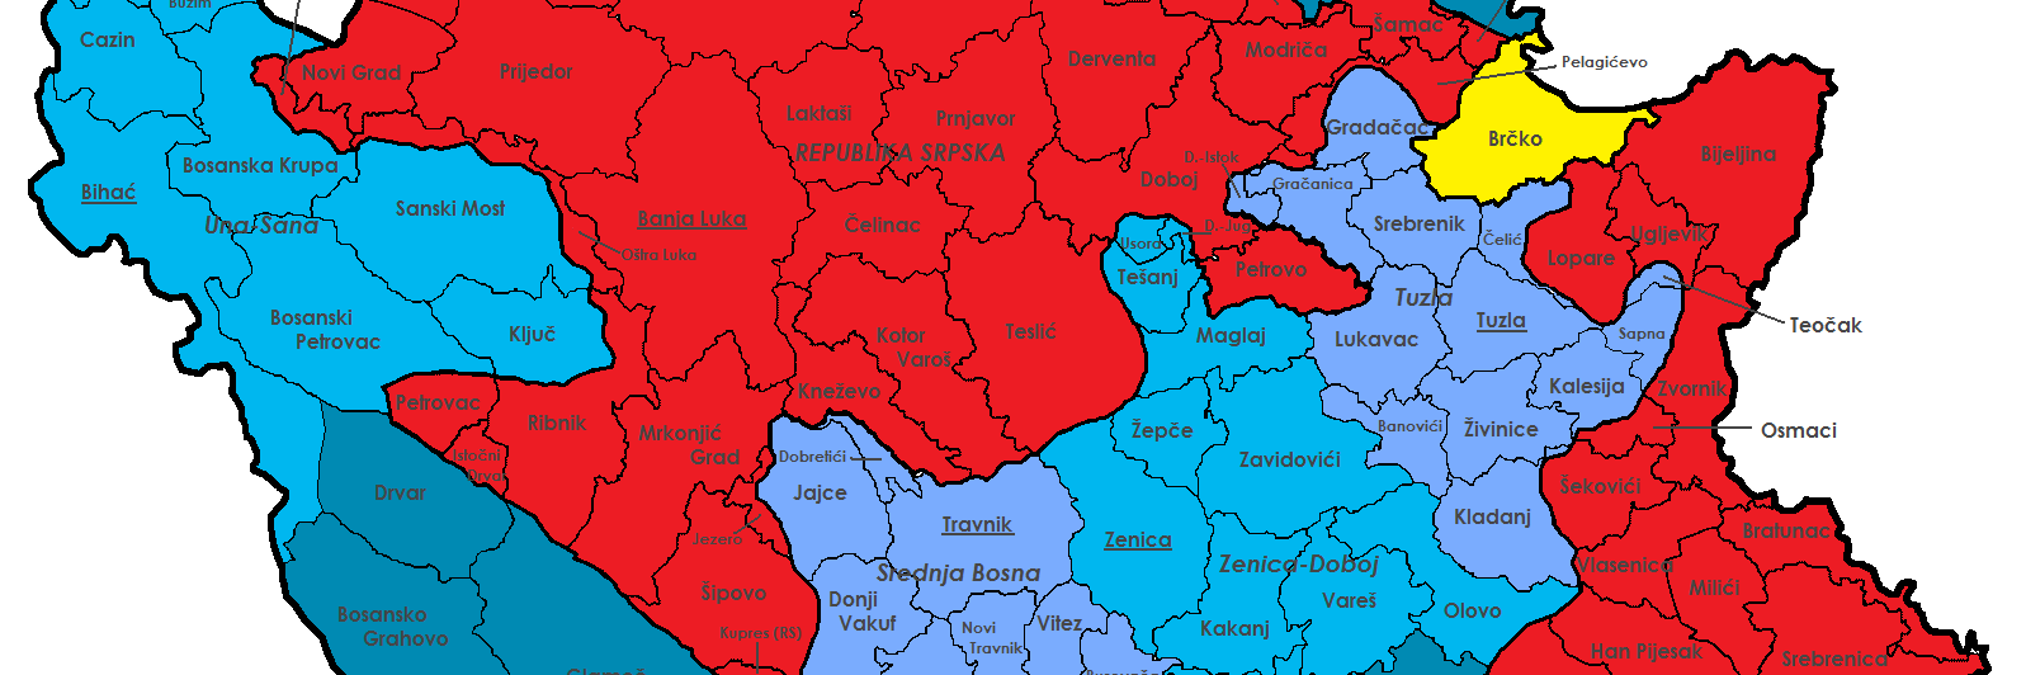 Административное деление Боснии и Герцеговины